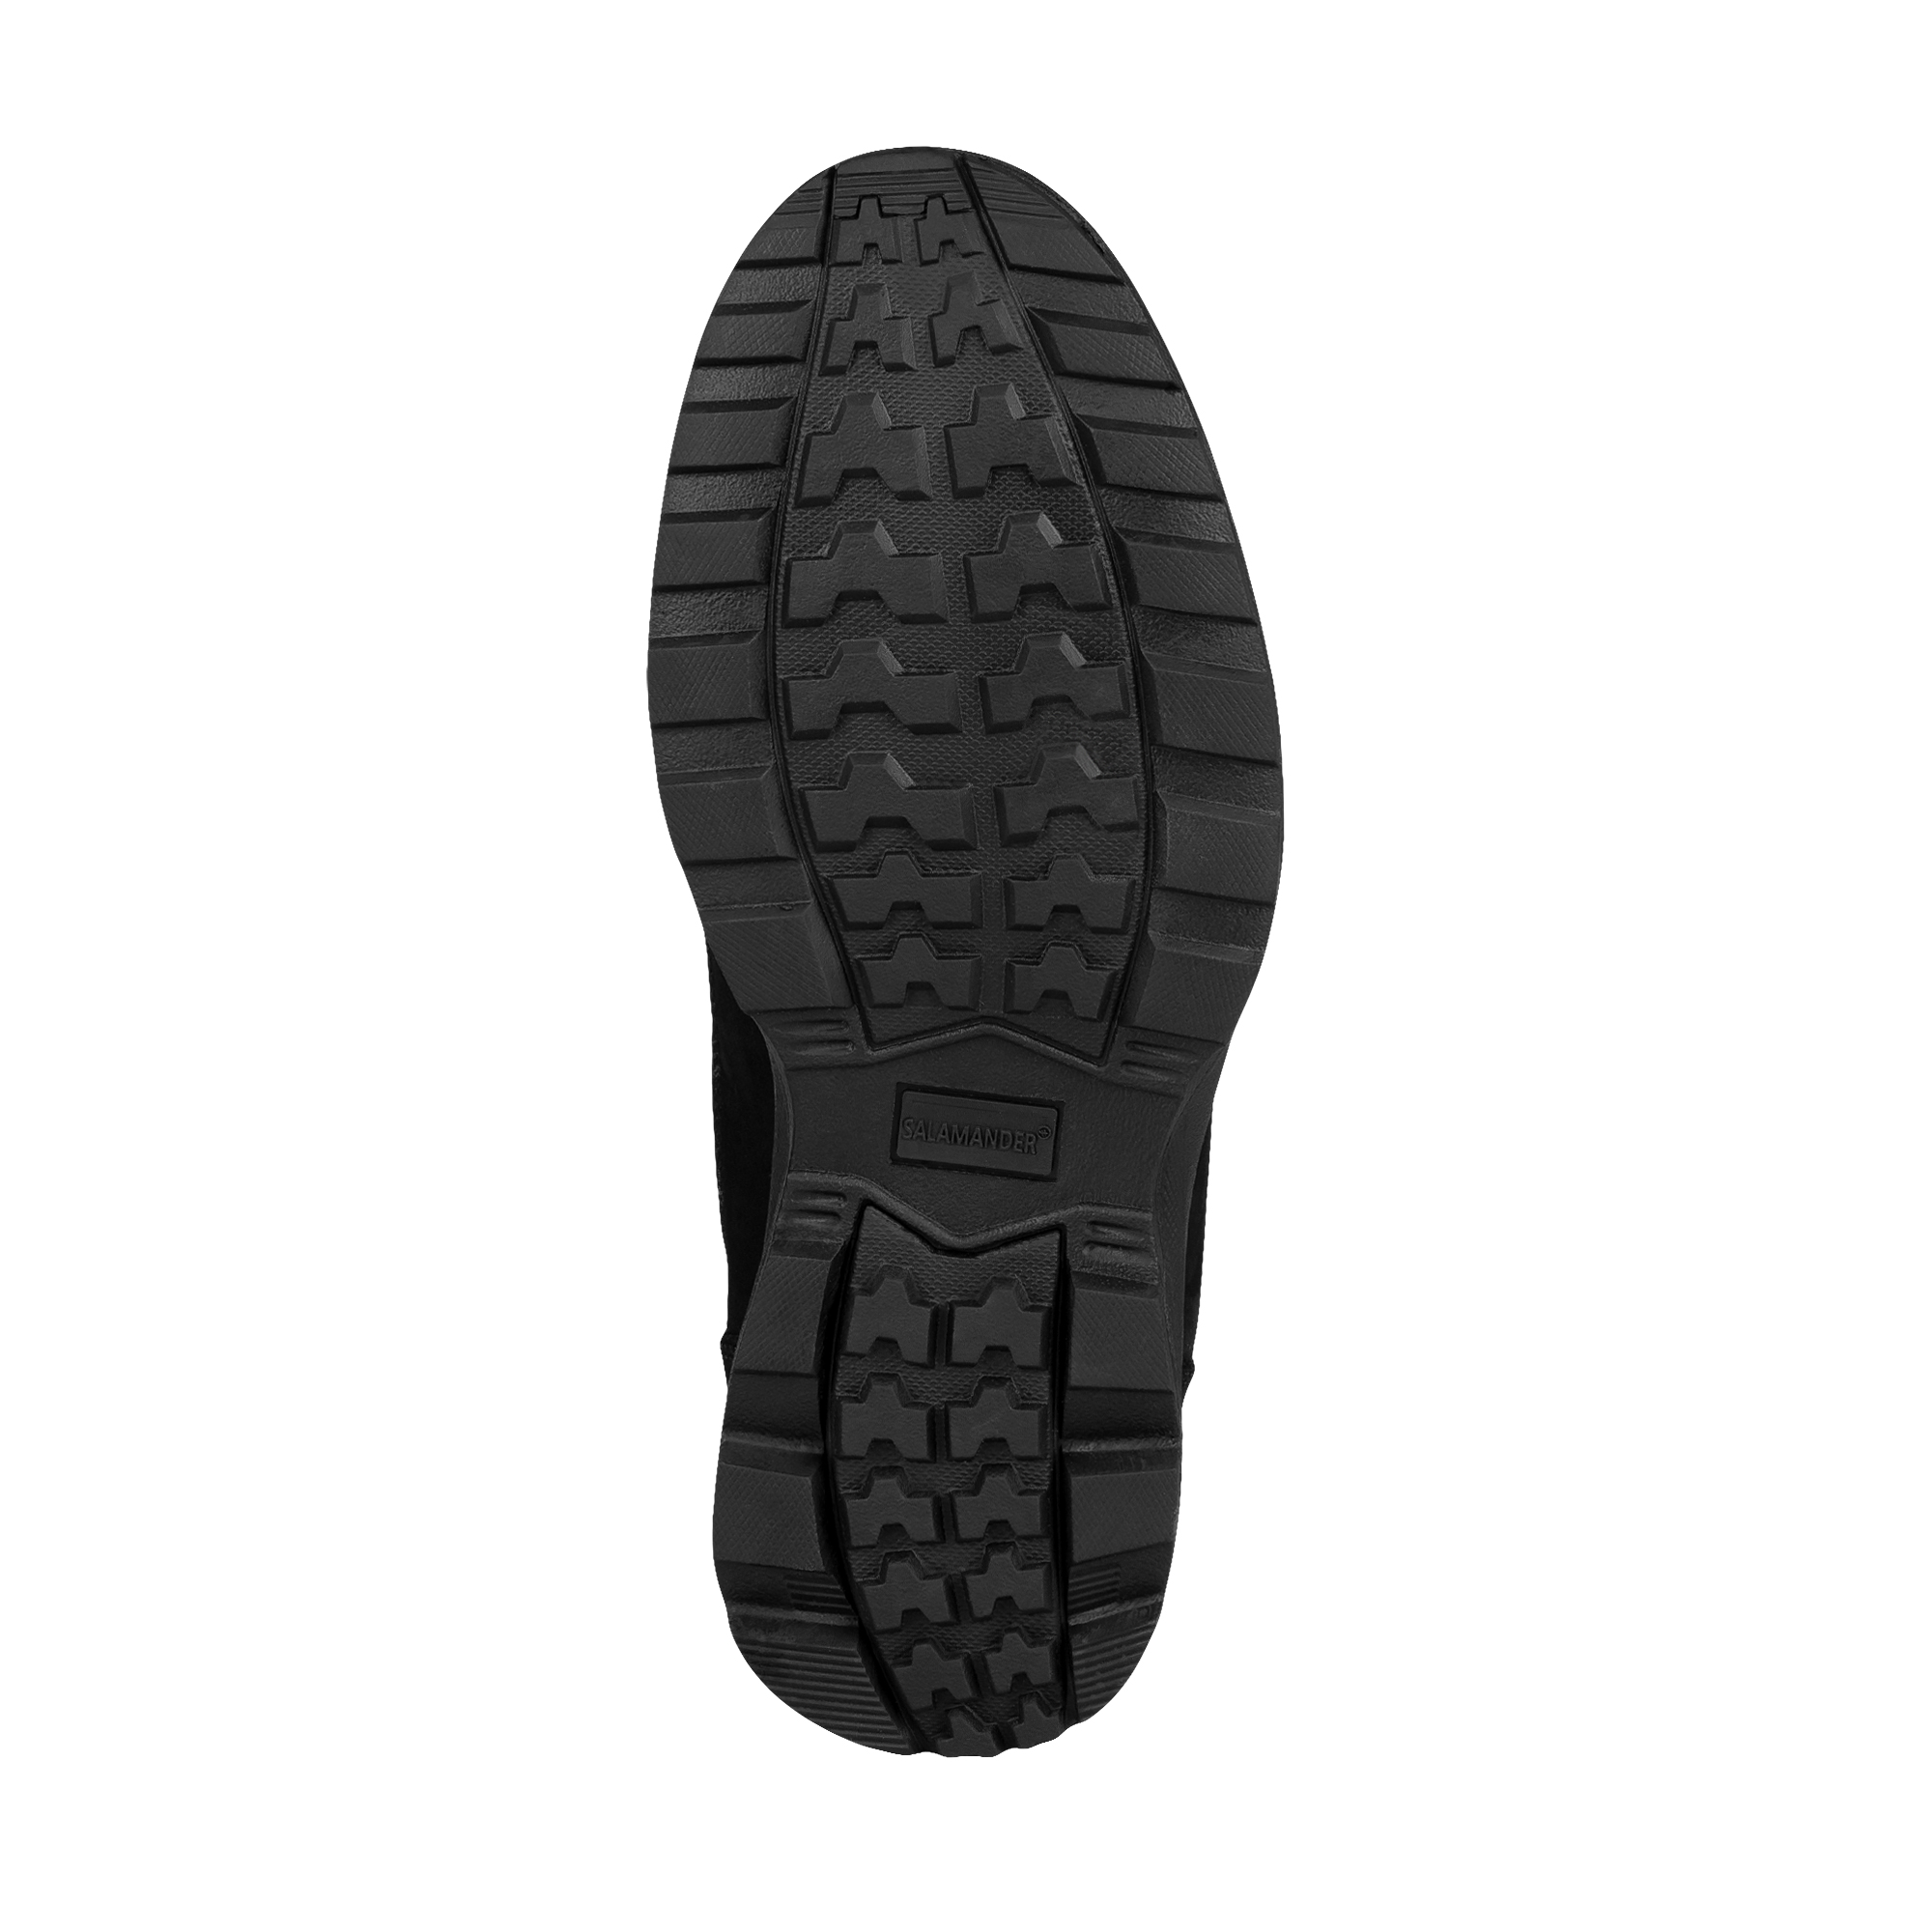 Ботинки Salamander 183-007C-5102, цвет черный, размер 41 - фото 4